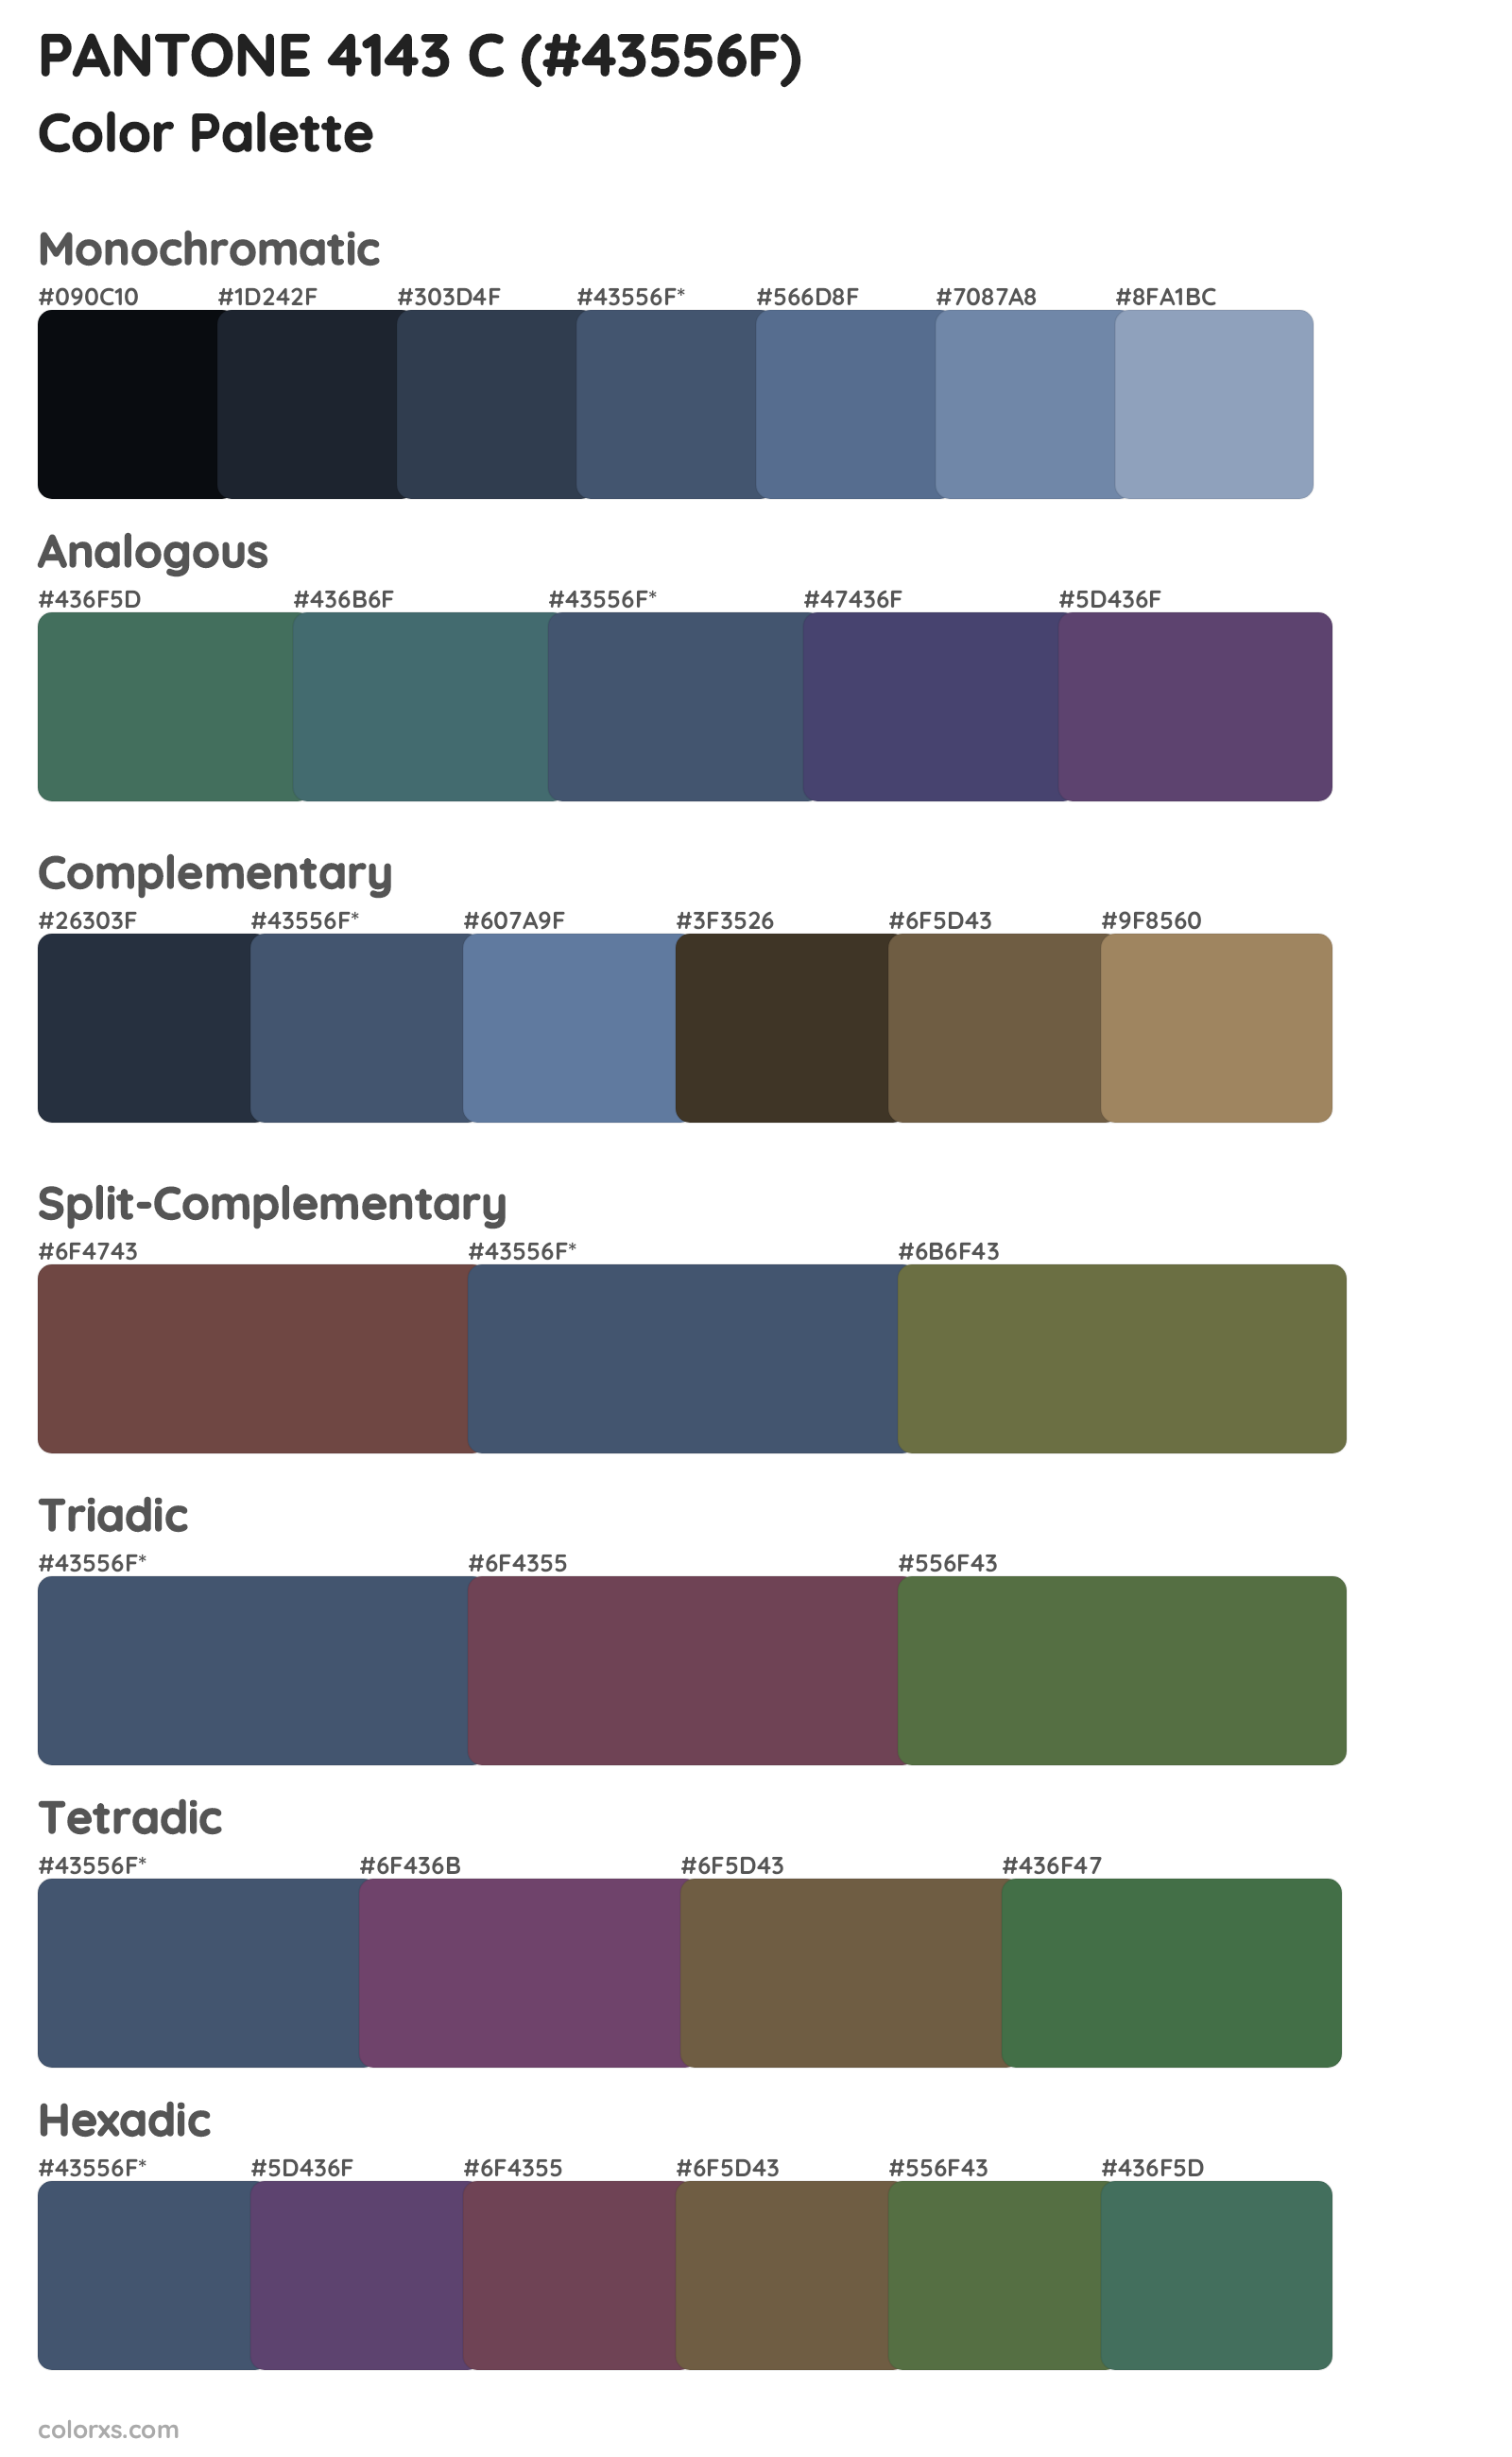 PANTONE 4143 C Color Scheme Palettes